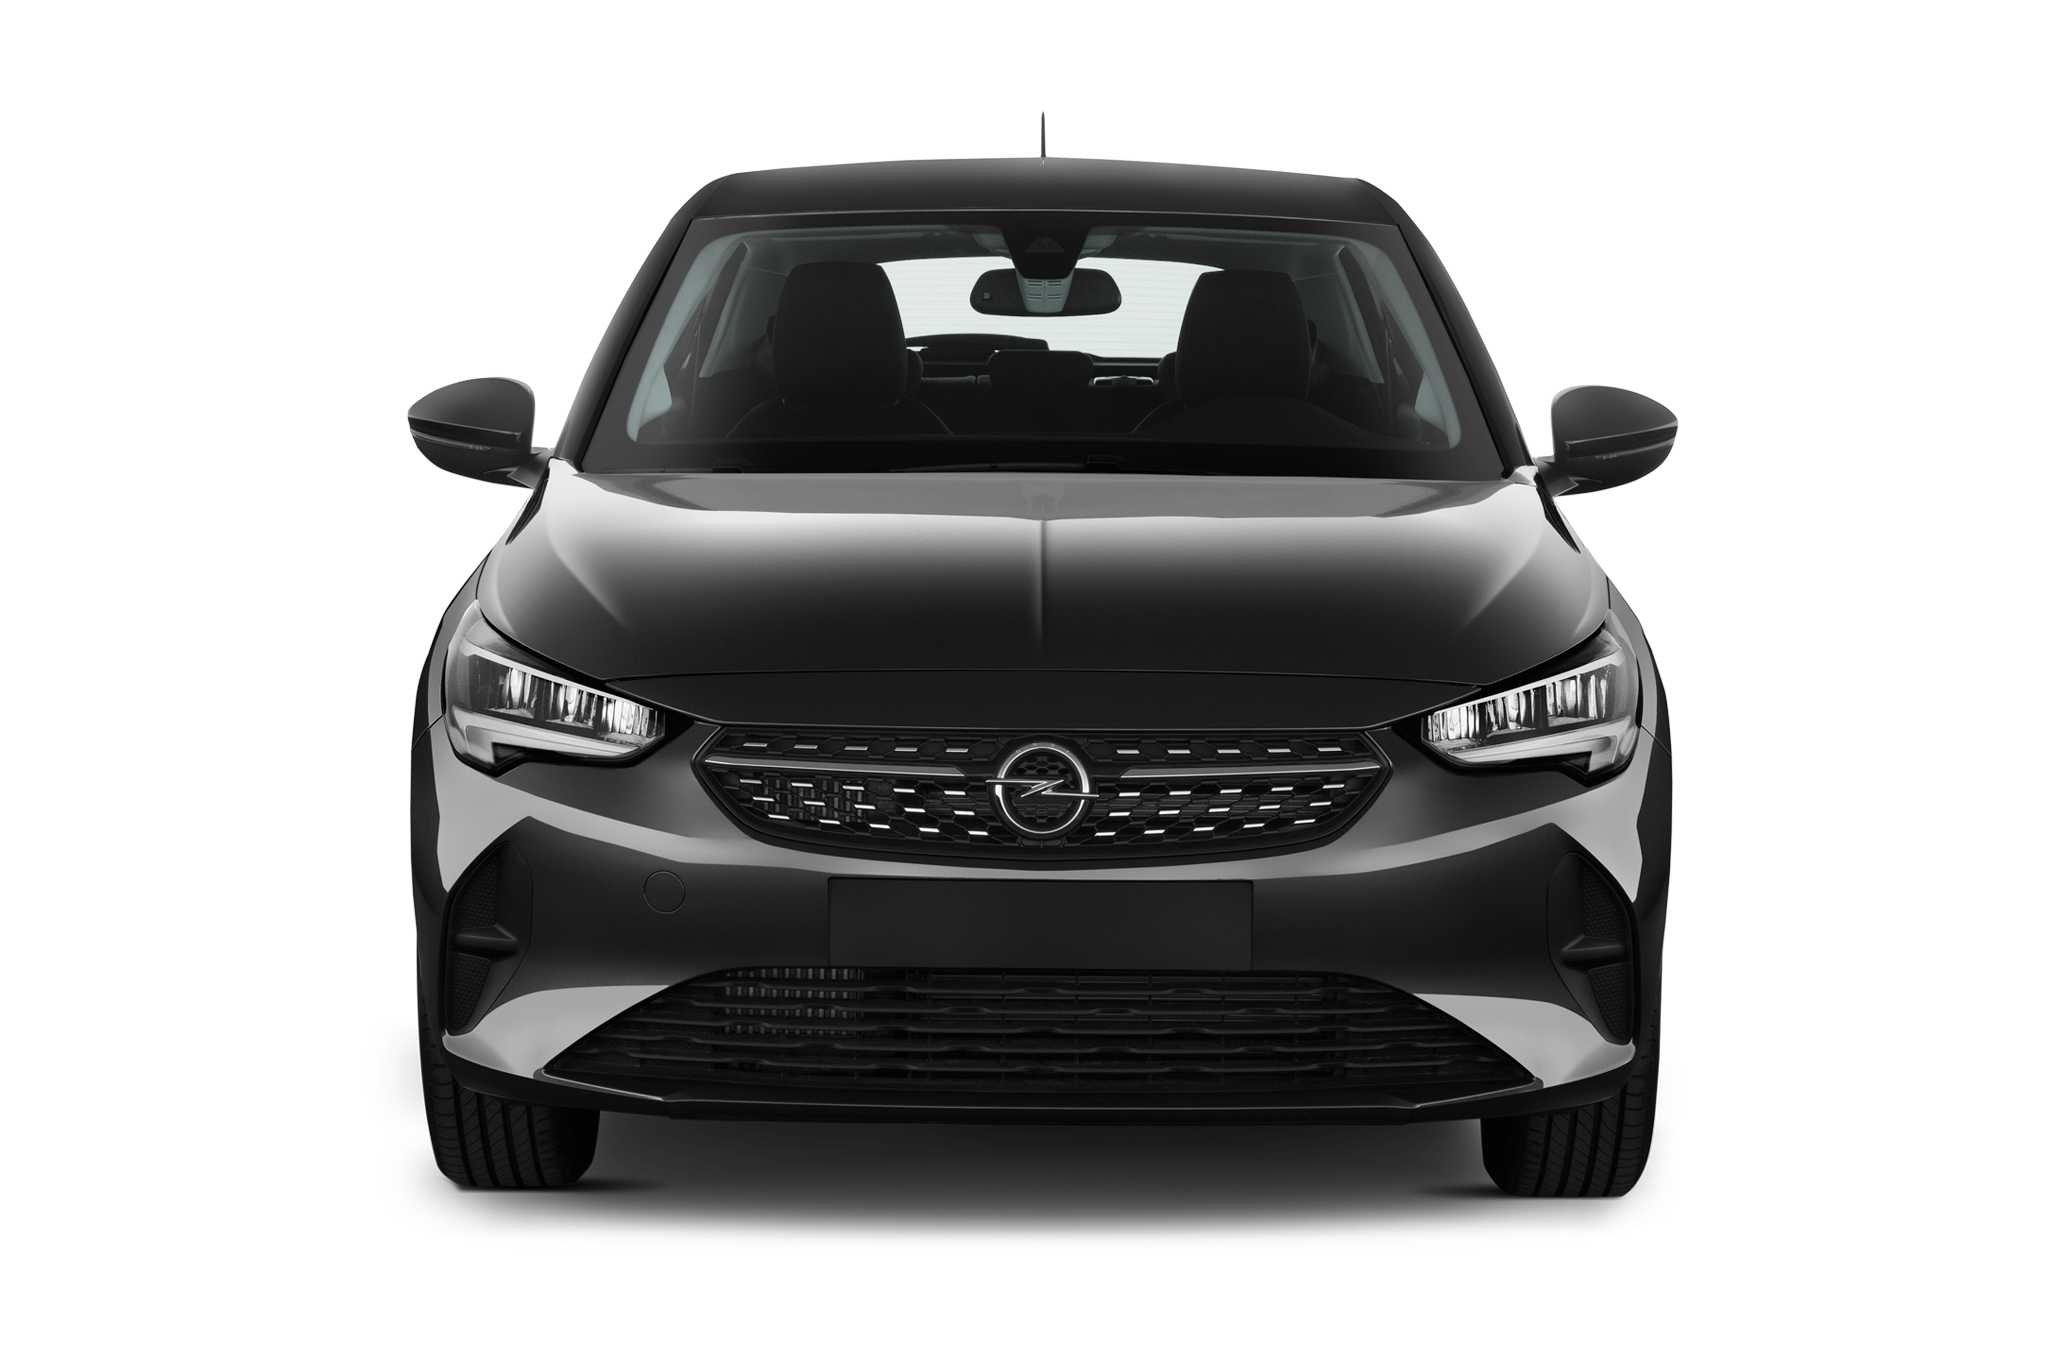 Opel Corsa Electric (Baujahr 2023) Elegance 5 Türen Frontansicht